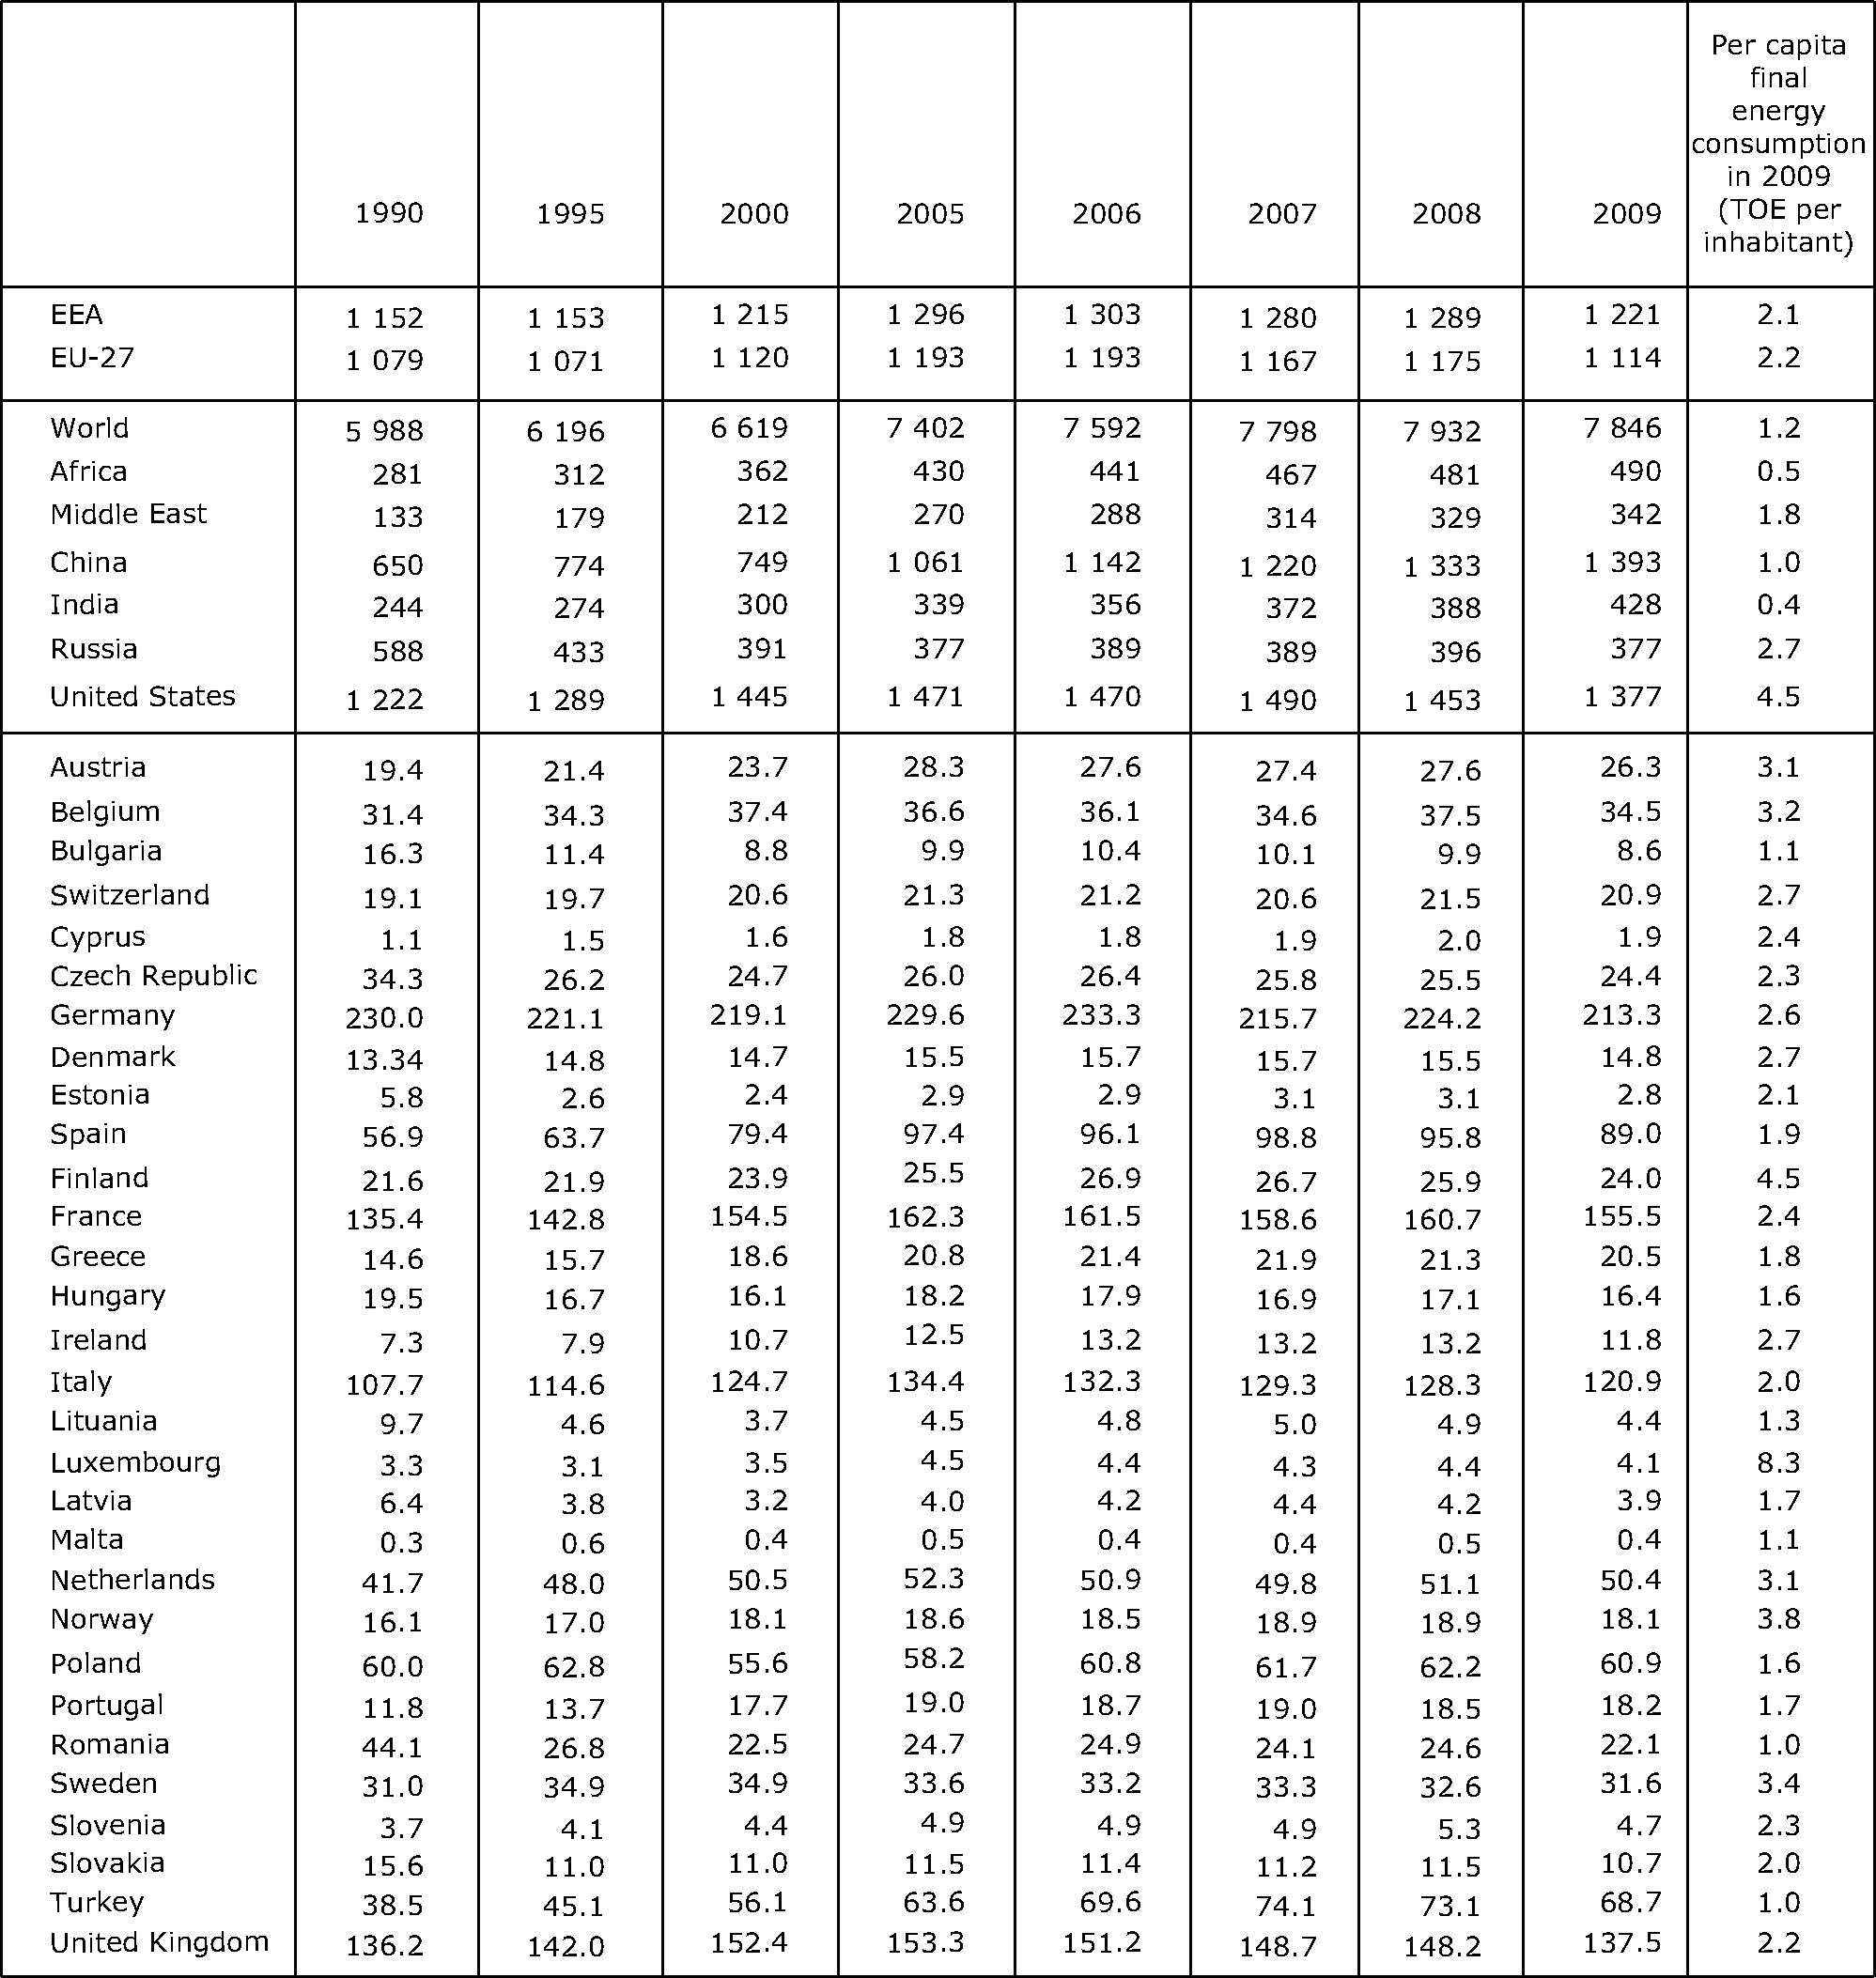 Final energy consumption (million TOE) and per capita final consumption, EU-27